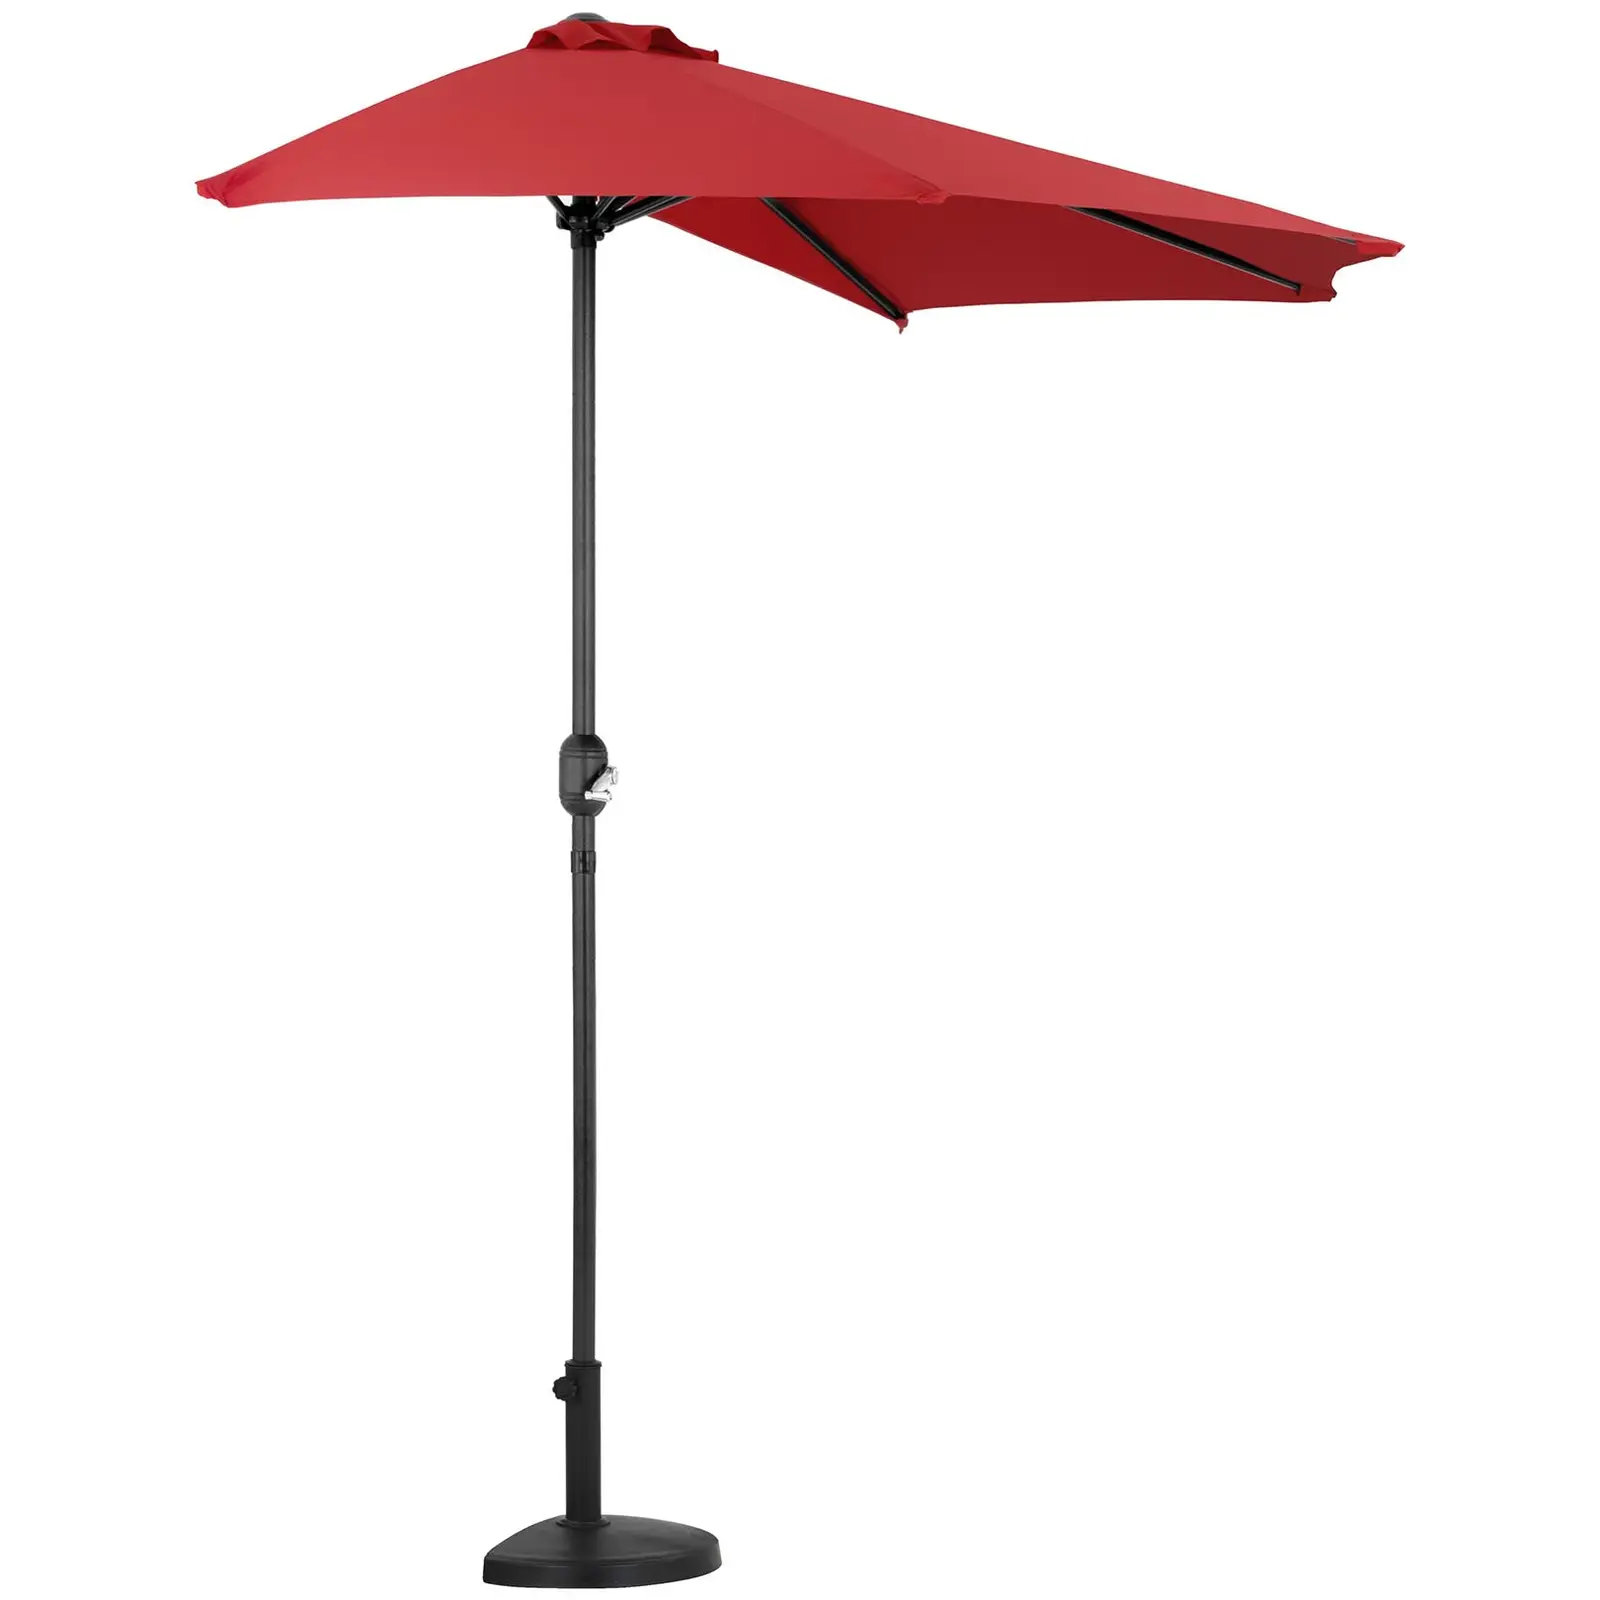 Halv parasollfot - parasollstangen har mål på 38 til 48 mm i diameter